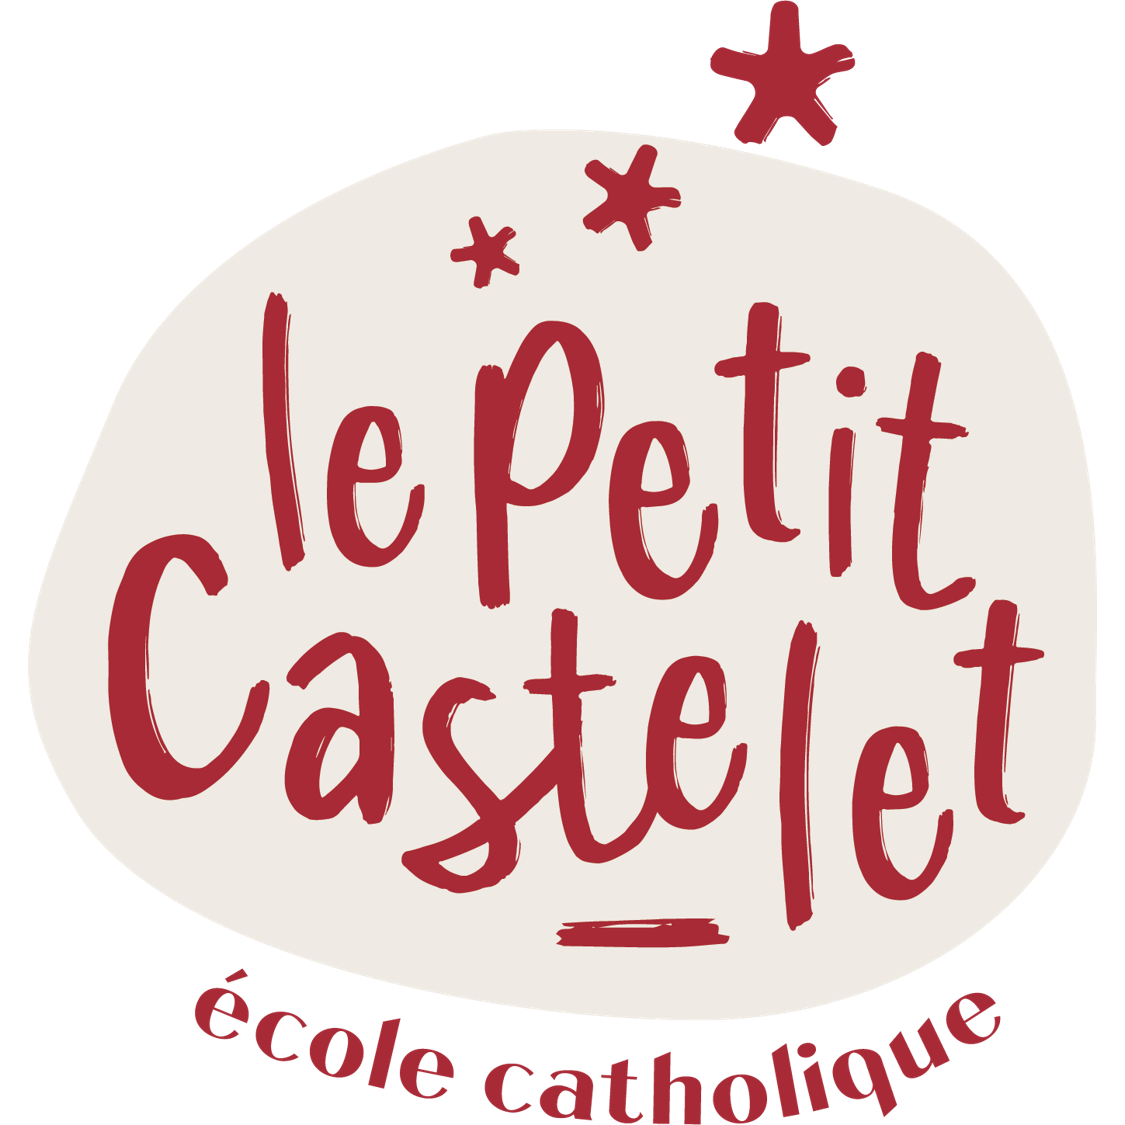 Le Petit Castelet